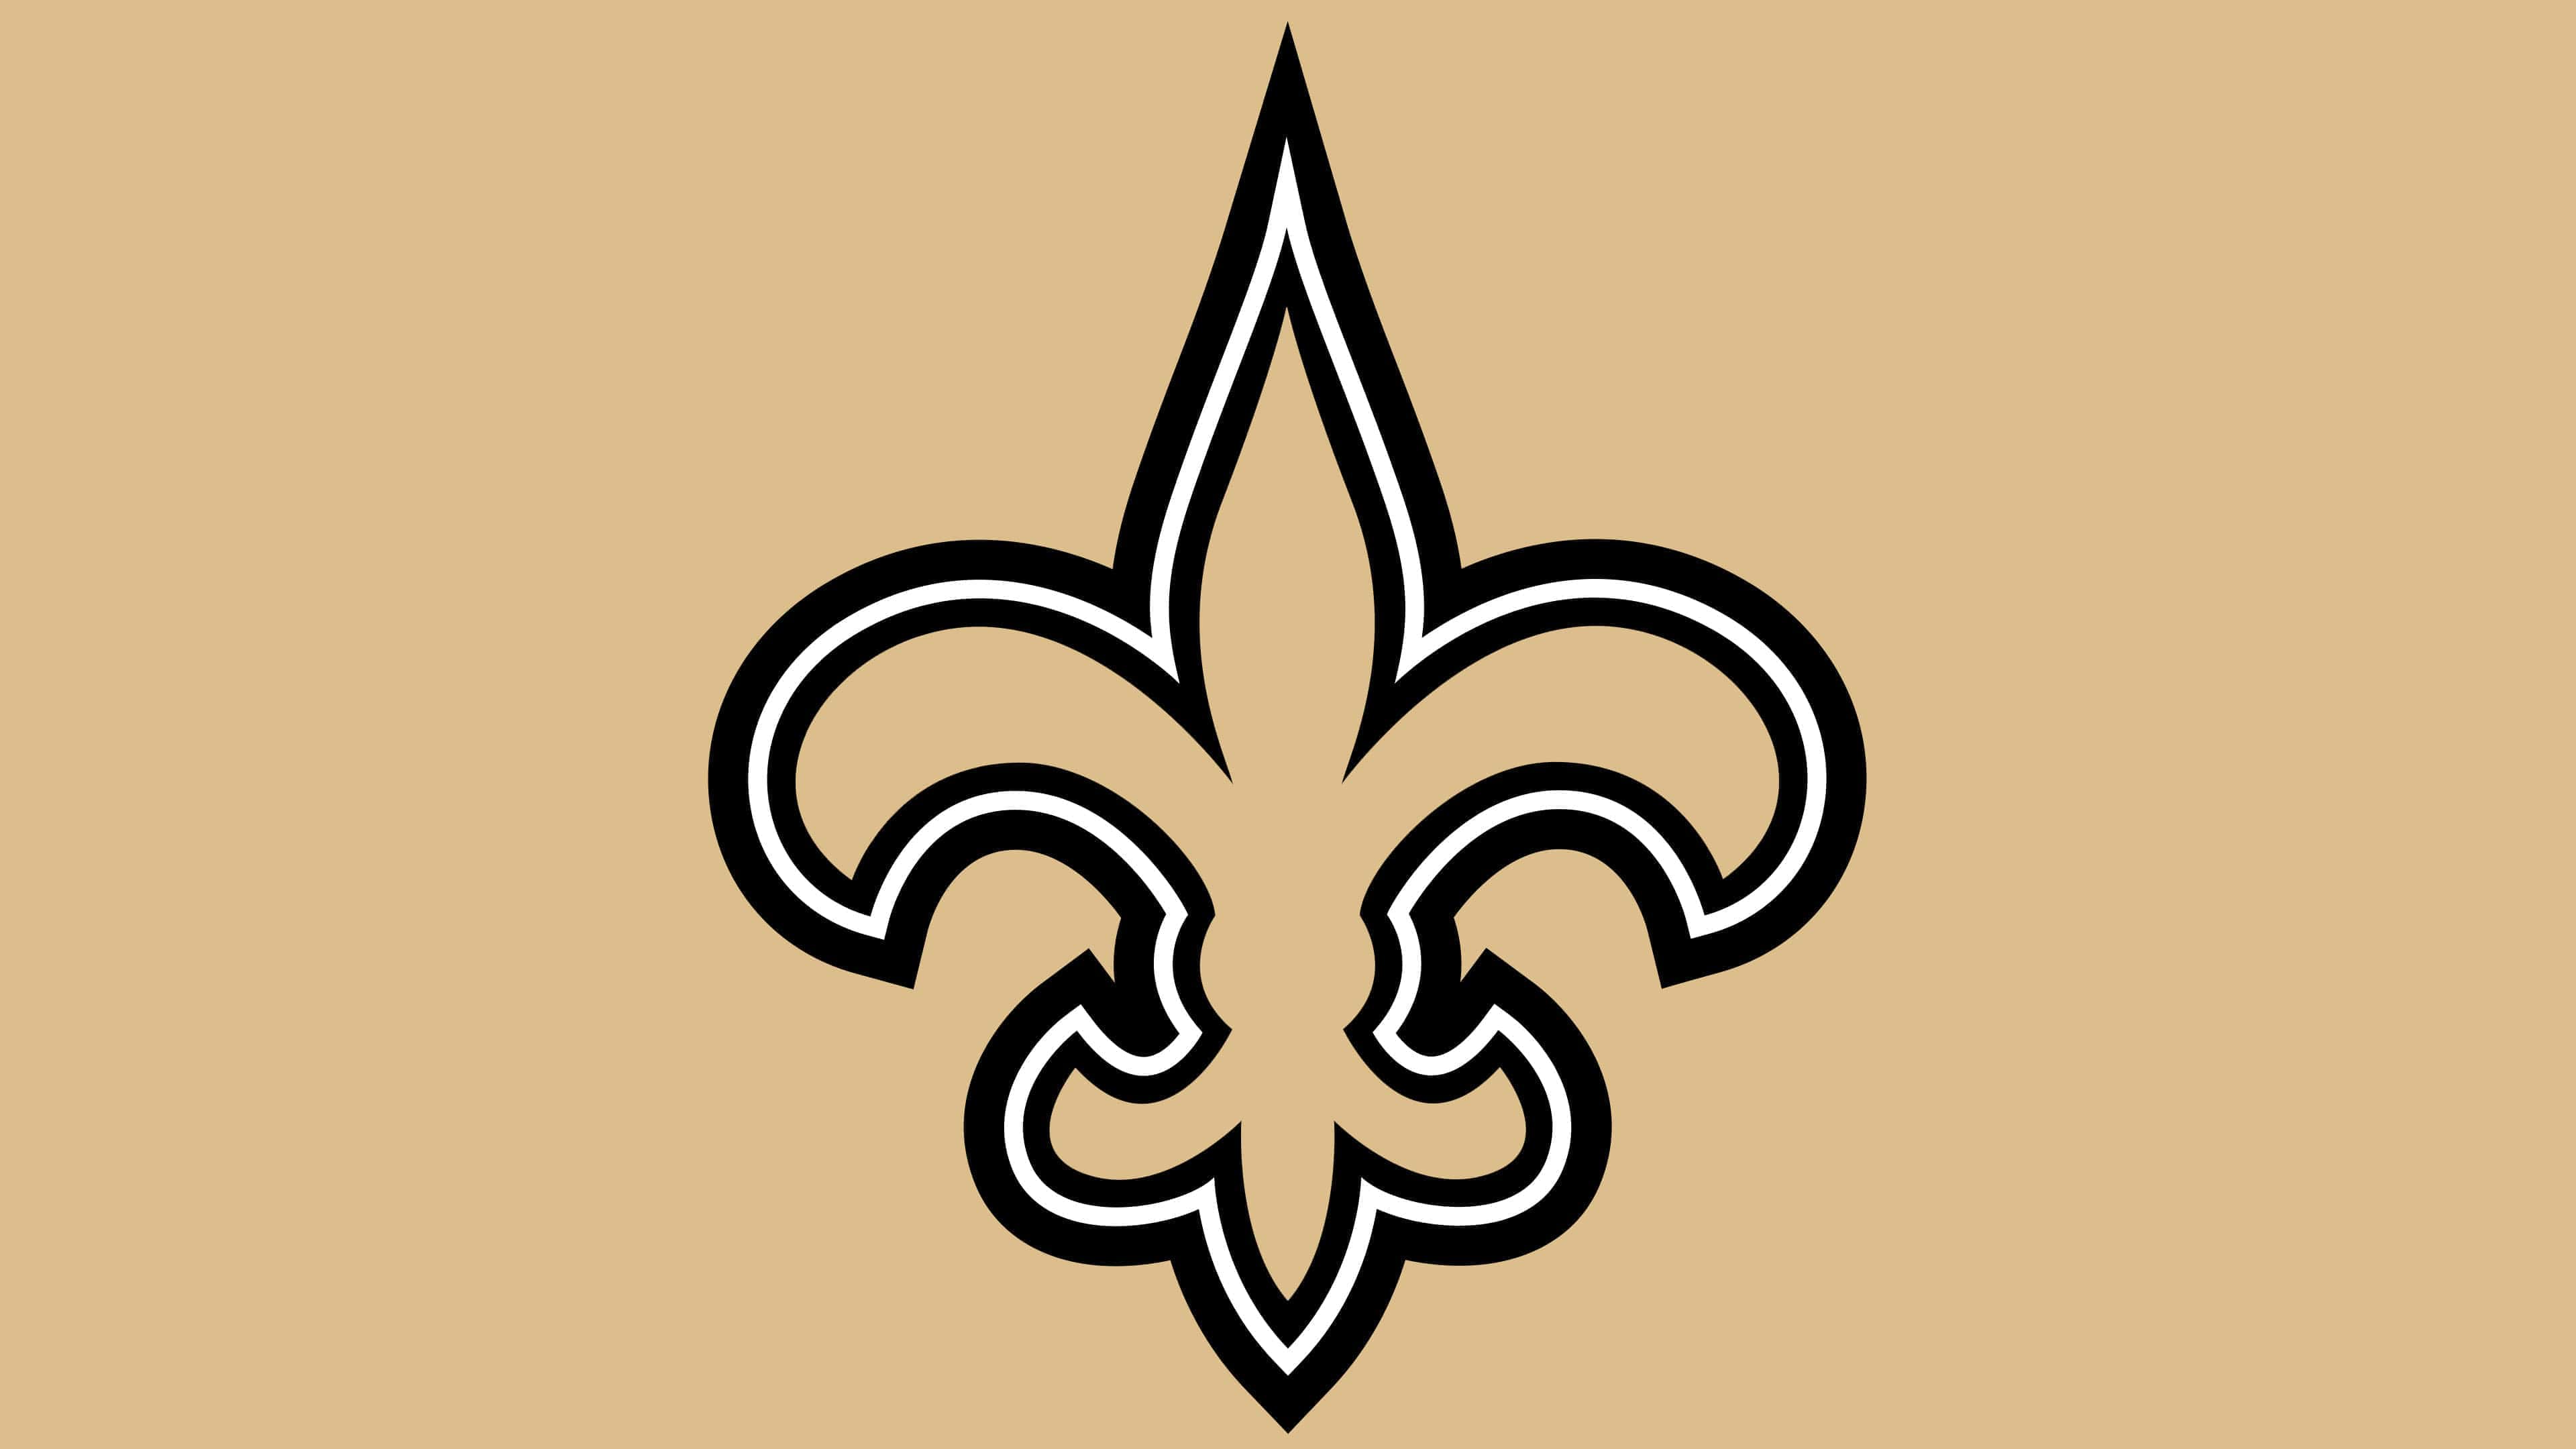 New Orleans Saints Logo Design